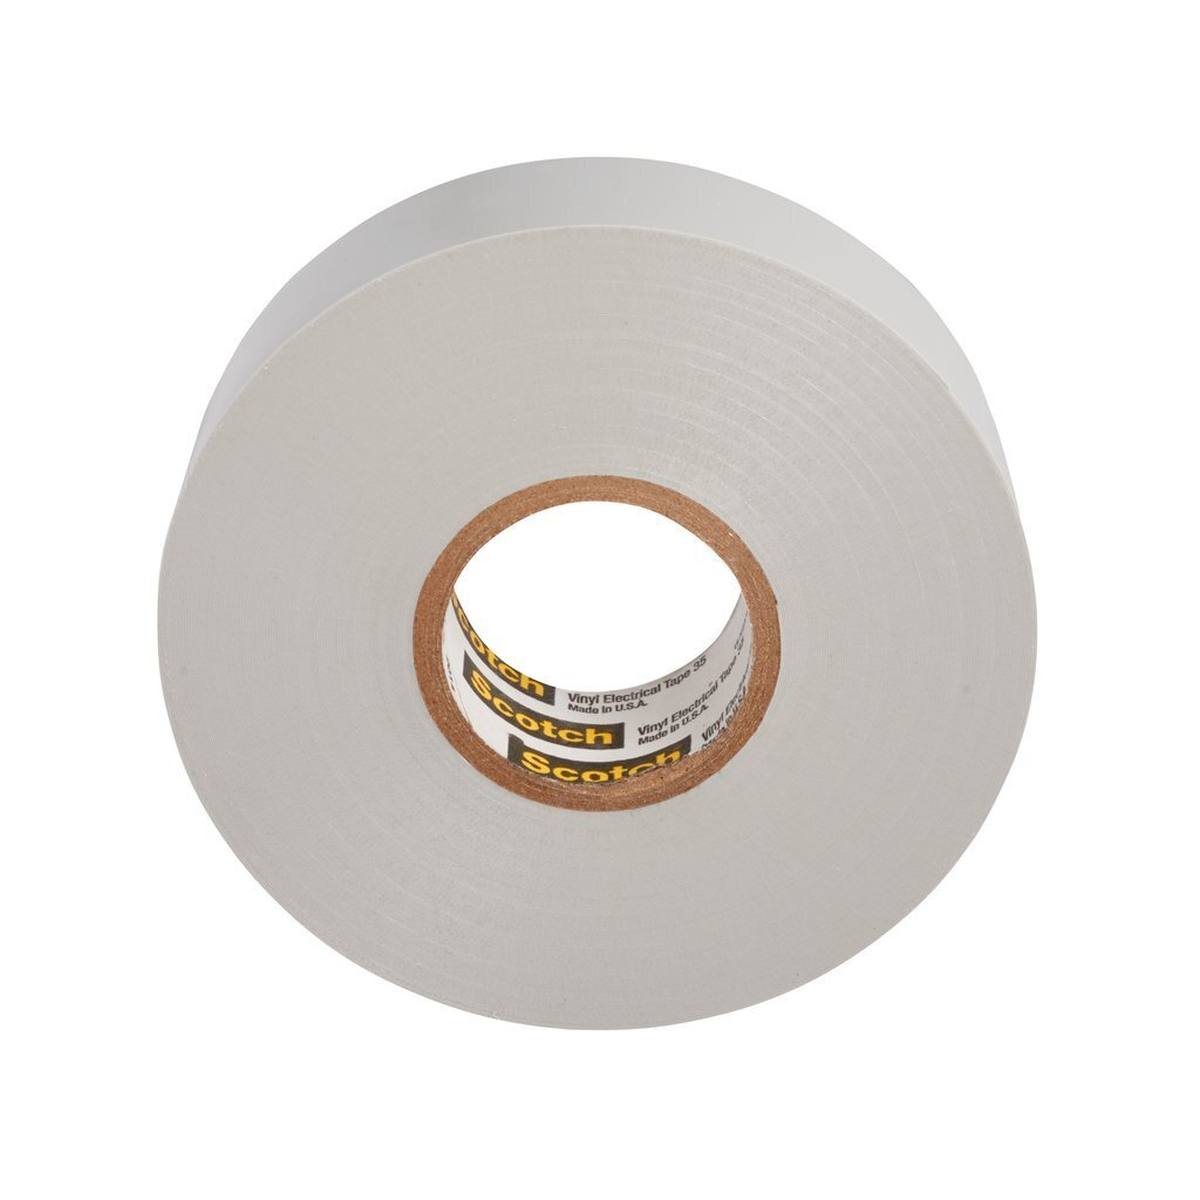 3M Scotch 35 Vinyl ruban électrique isolant, gris, 19 mm x 20 m, 0,18 mm